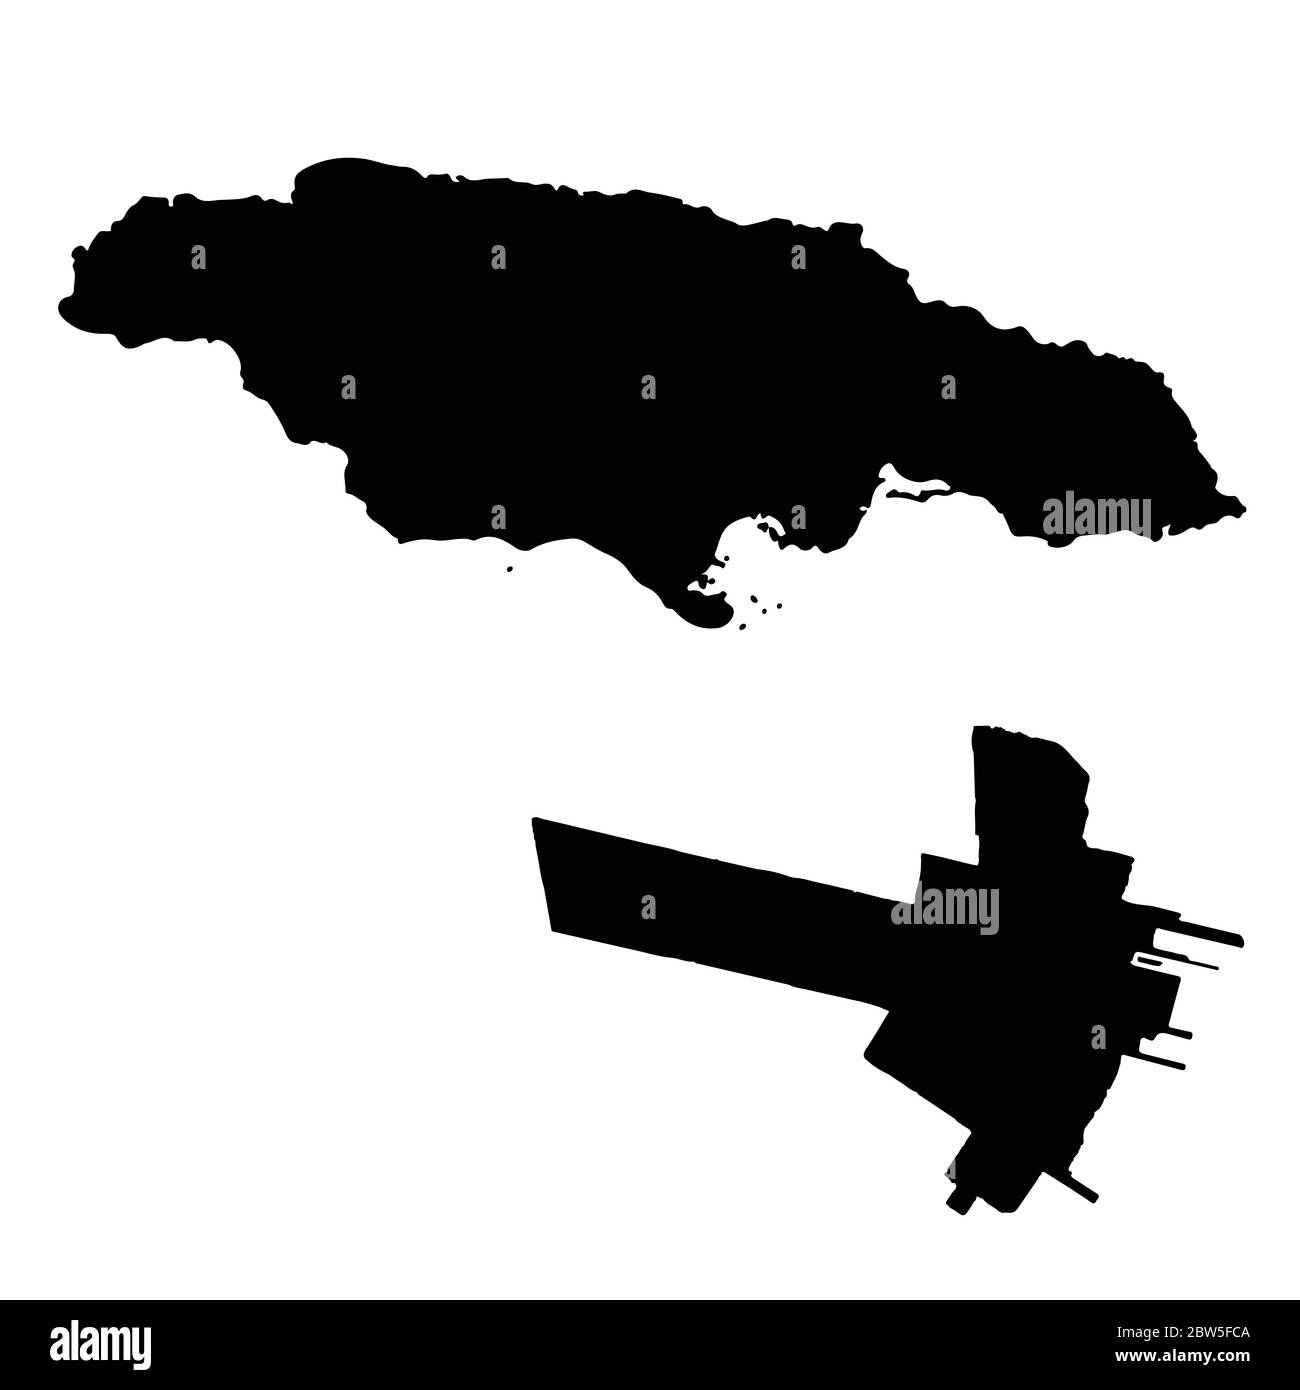 Carte vectorielle Jamaïque et Kingston. Pays et capitale. Illustration de vecteur isolé. Noir sur fond blanc. Illustration de l'EPS 10. Illustration de Vecteur